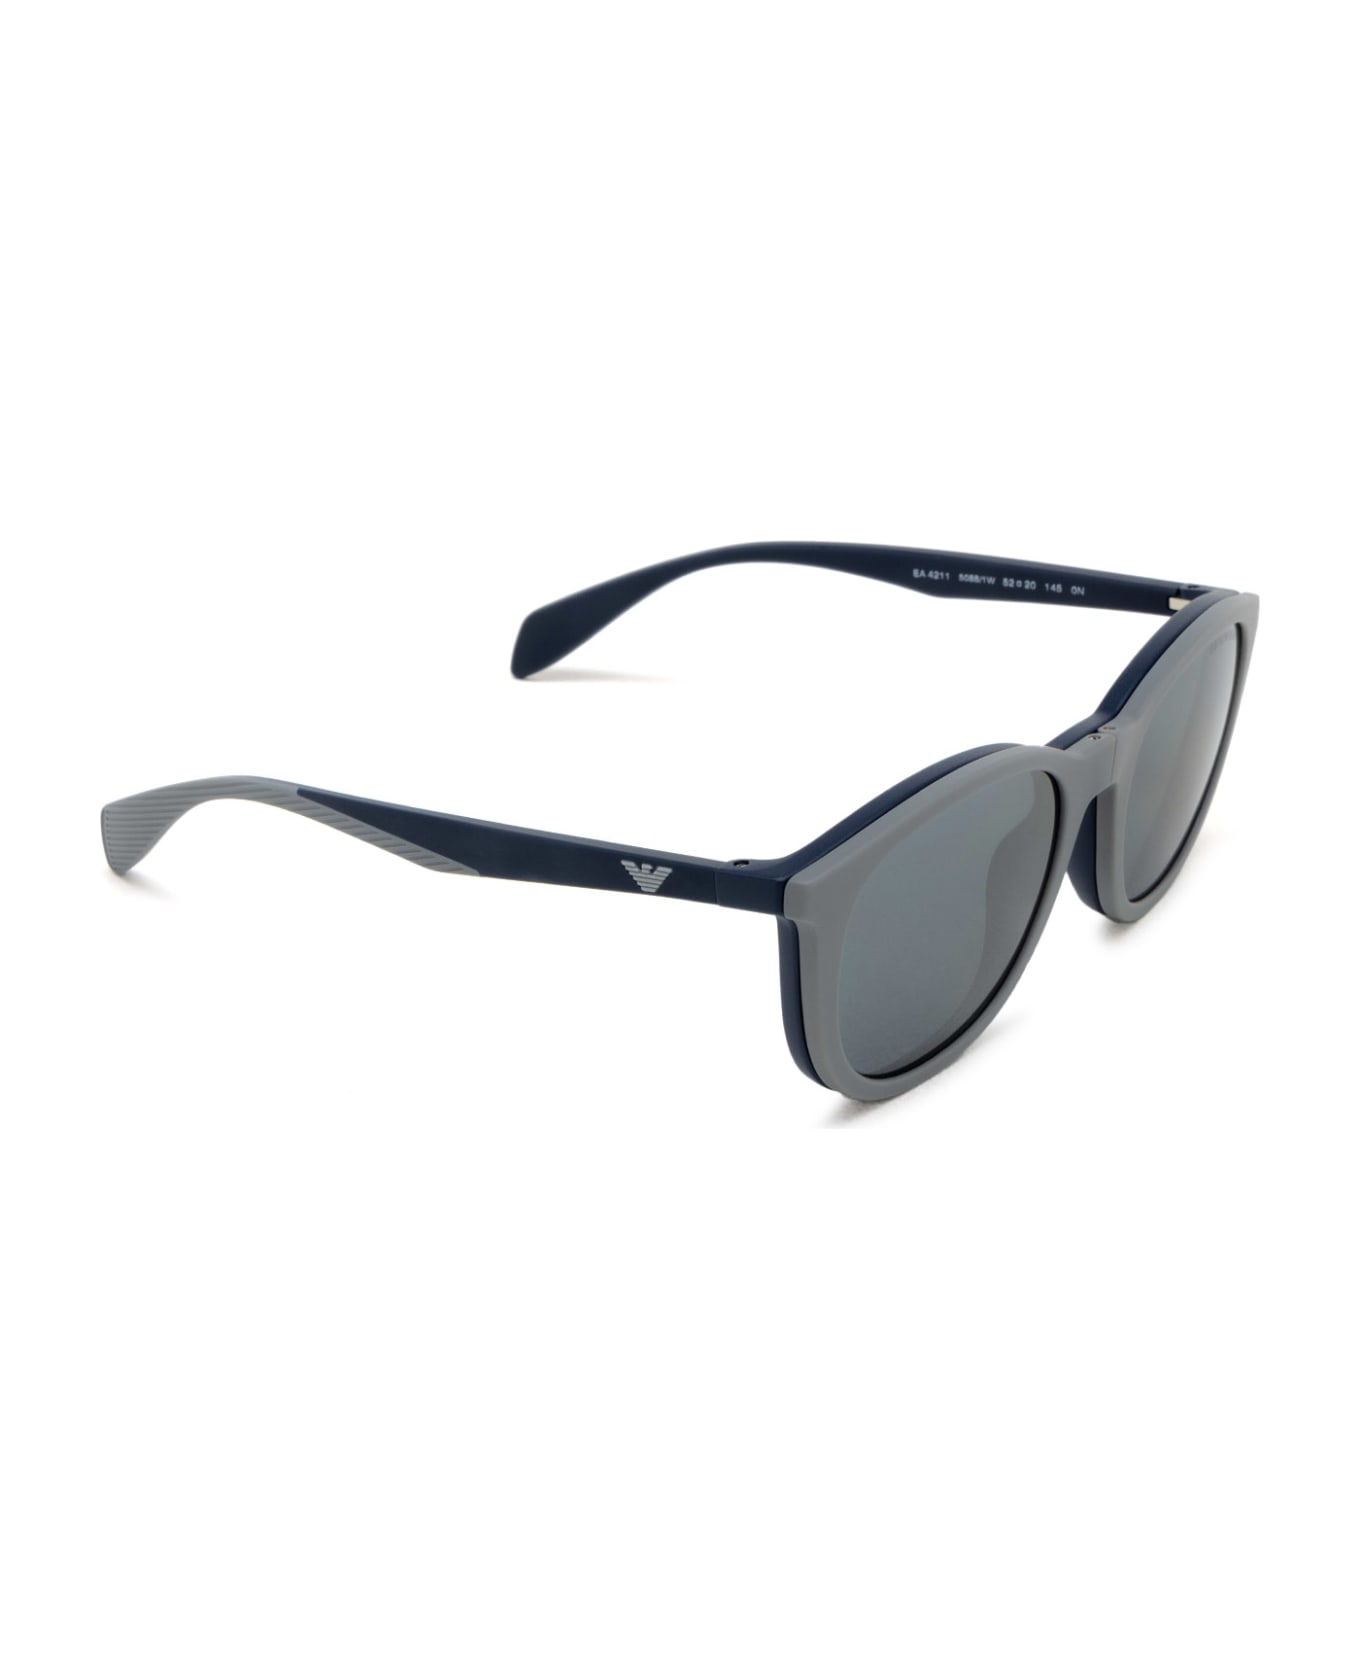 Emporio Armani Ea4211 Matte Blue Sunglasses - Matte Blue